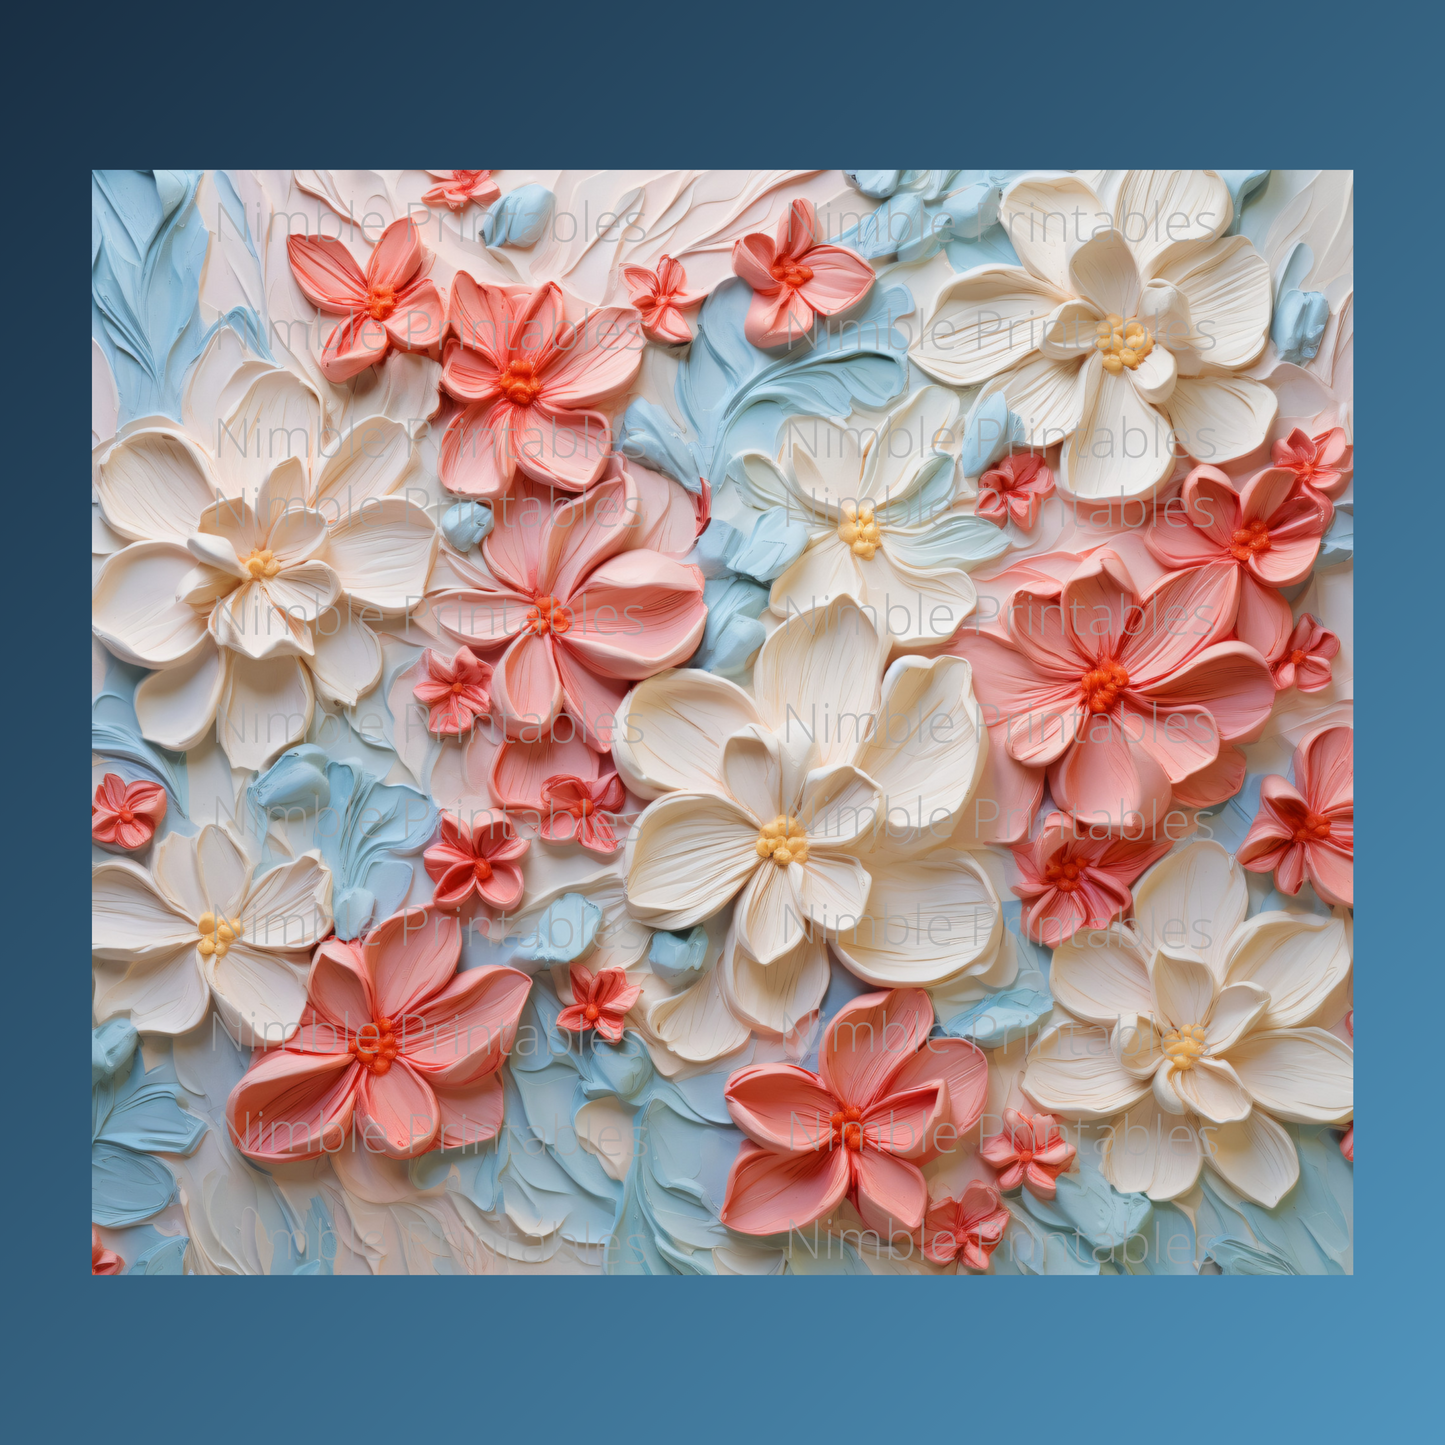 Floral Tumbler Wrap Design 20z Tumbler Digital Download PNG Sublimation Tumbler Wrap Floral PNG Canvas Painting